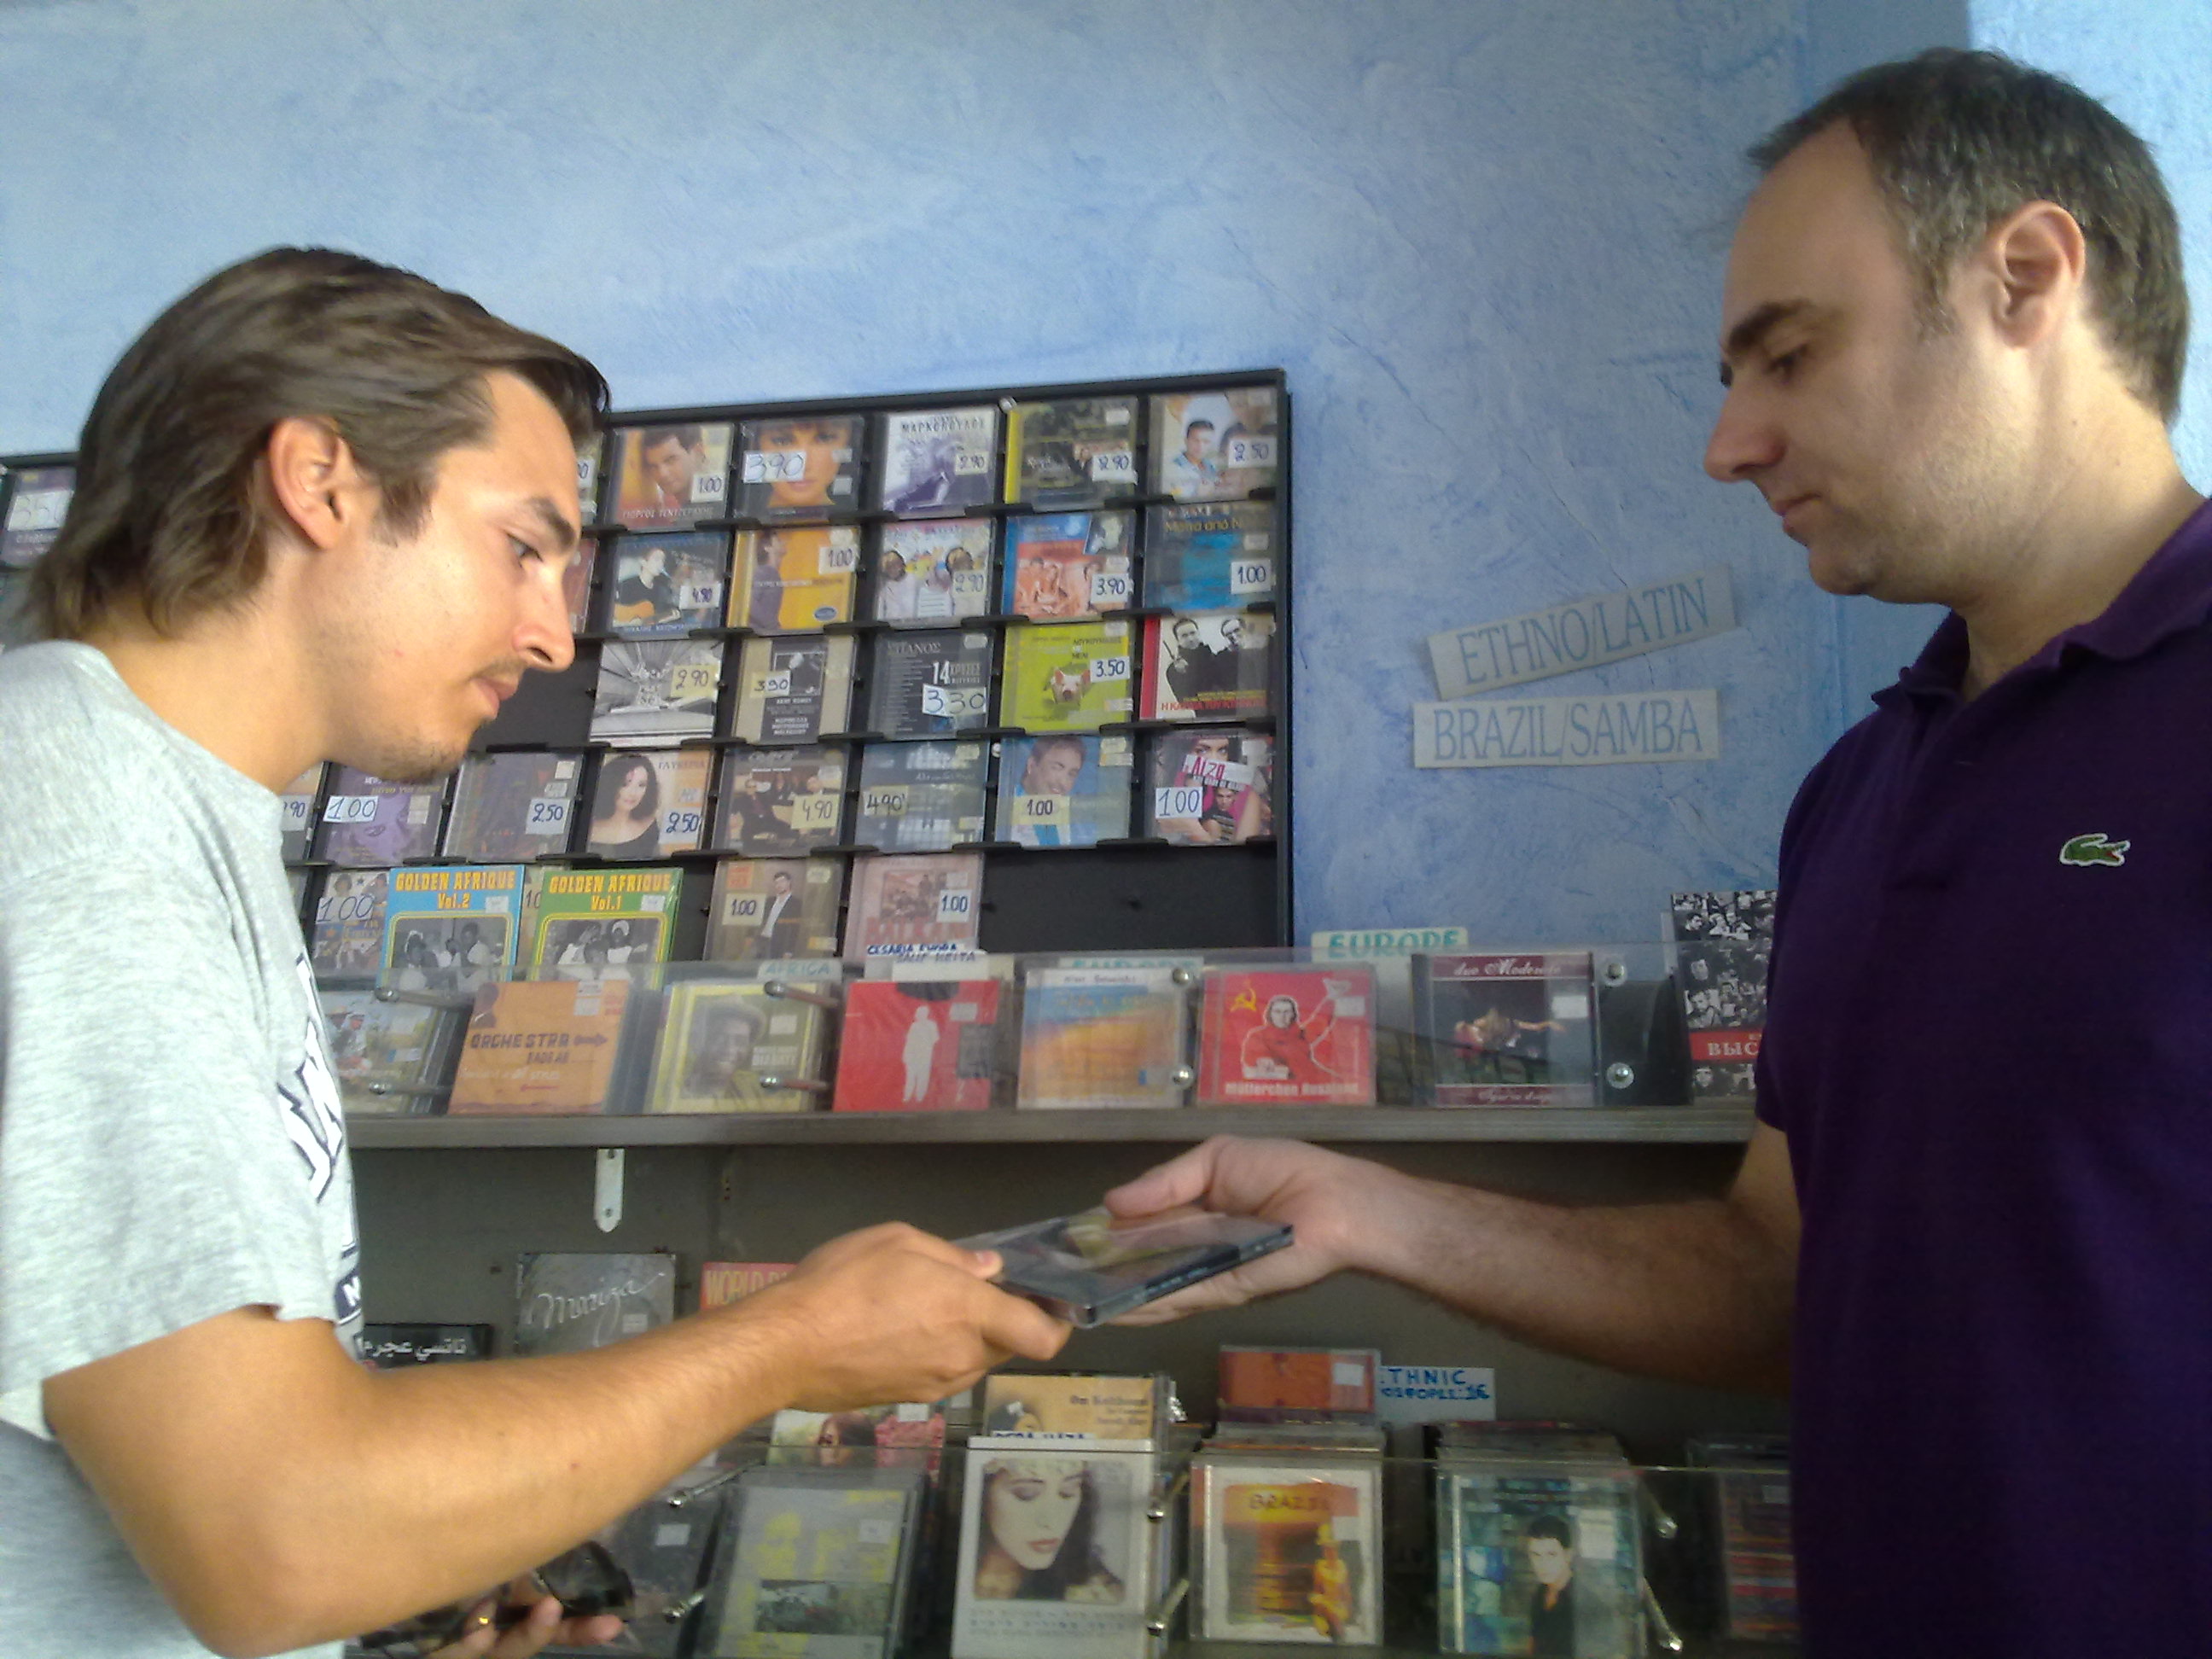 Στο κατάστημα του Ζαχαρία,βρίσκειςμεταχειρισμένα cd σε πολύ καλή κατάσταση.